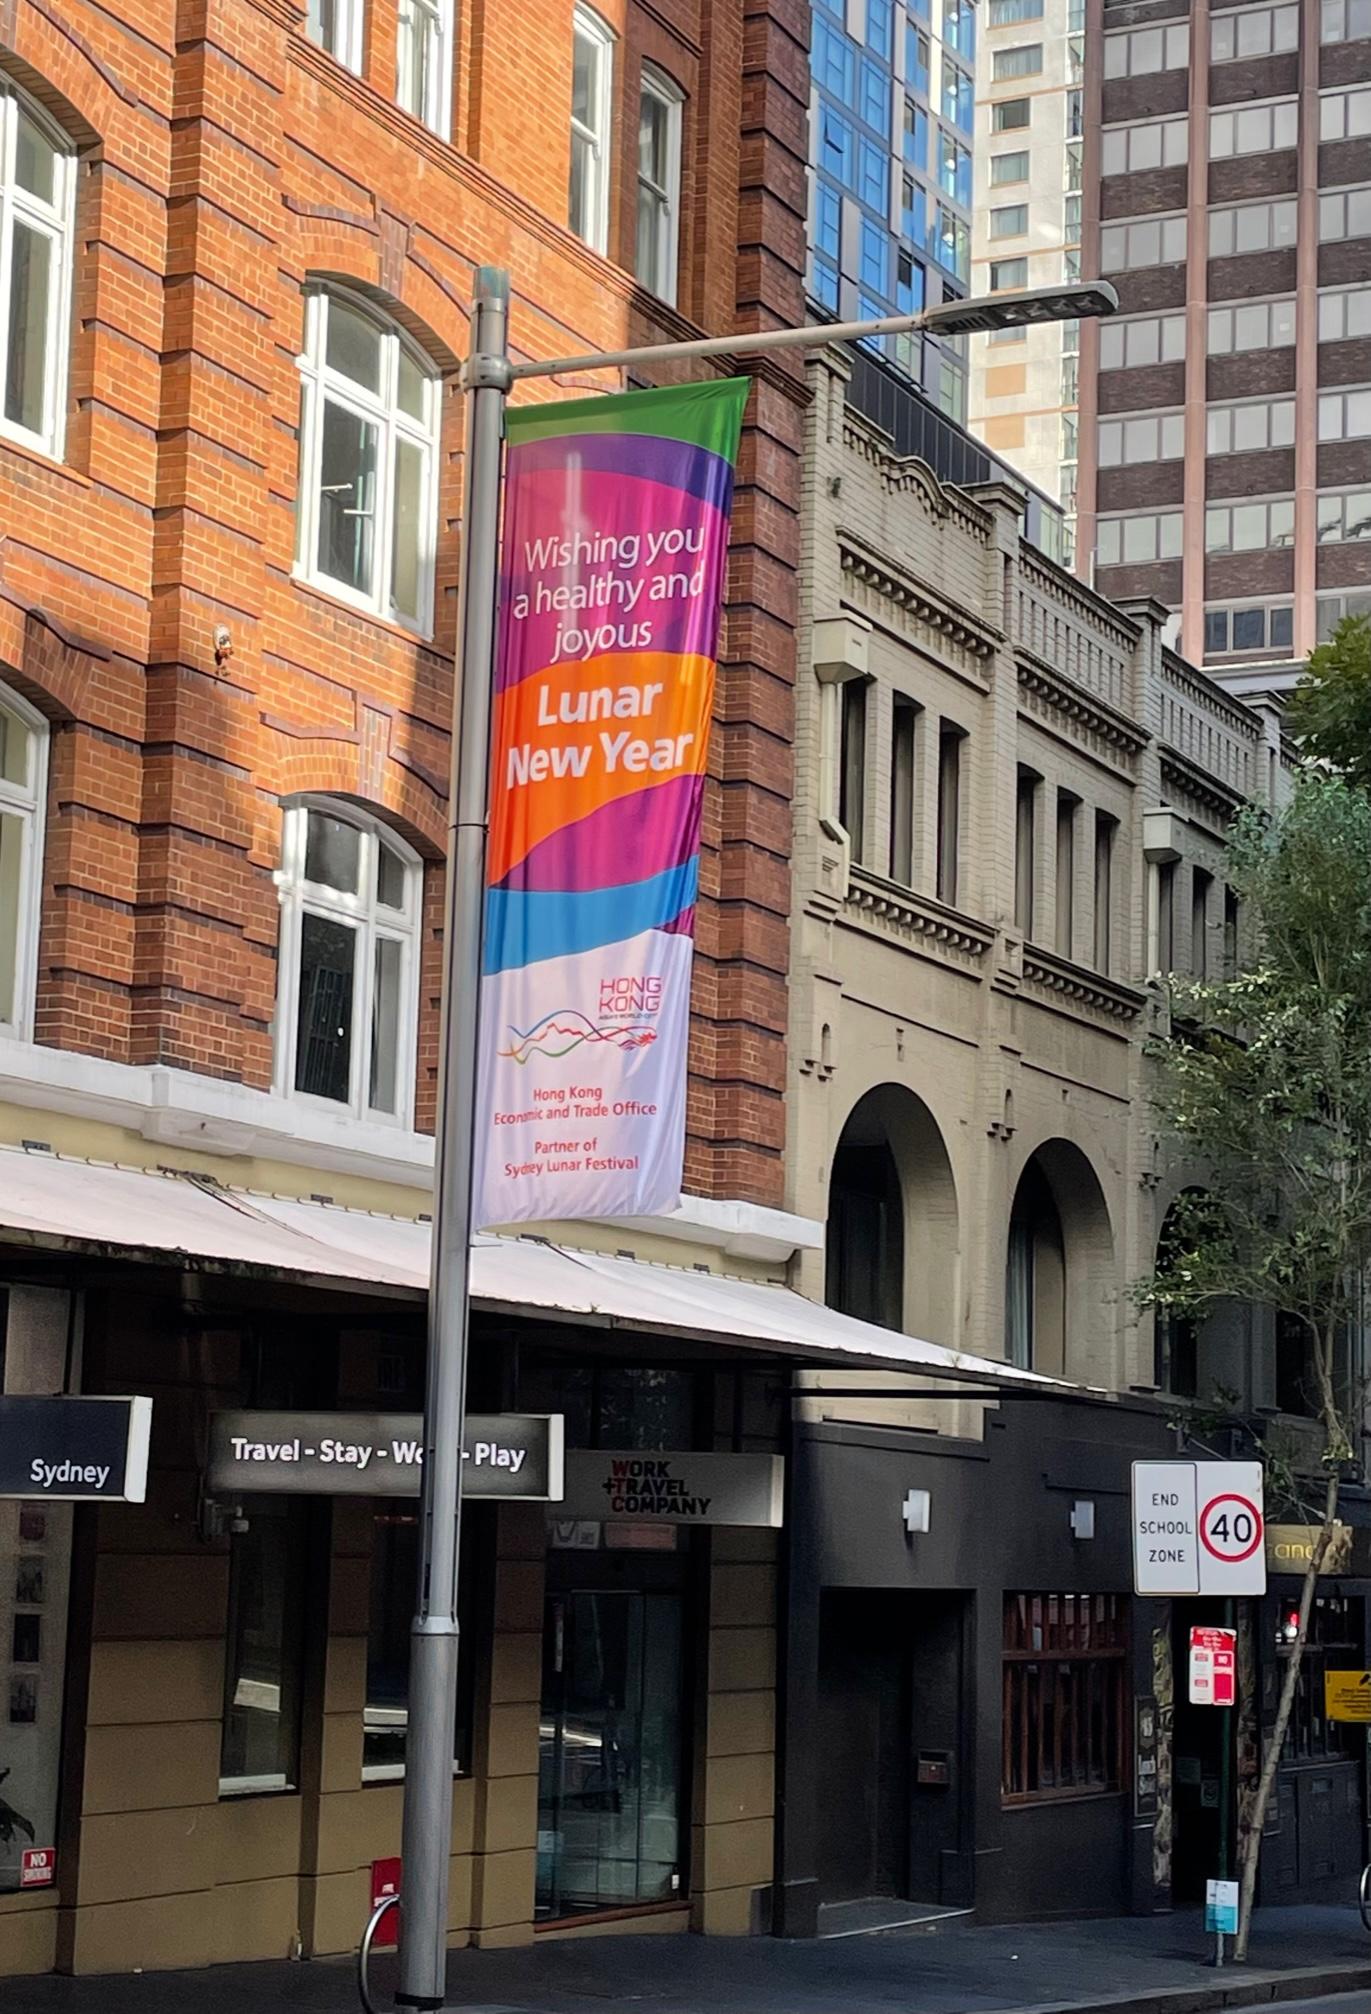 由悉尼市政府舉辦的悉尼農曆節在一月二十九日至二月十三日舉行。節慶期間，香港駐悉尼經濟貿易辦事處在悉尼市中心主要地點展示以香港為主題並印有新年賀語的大型旗幟，與當地市民同慶新春。